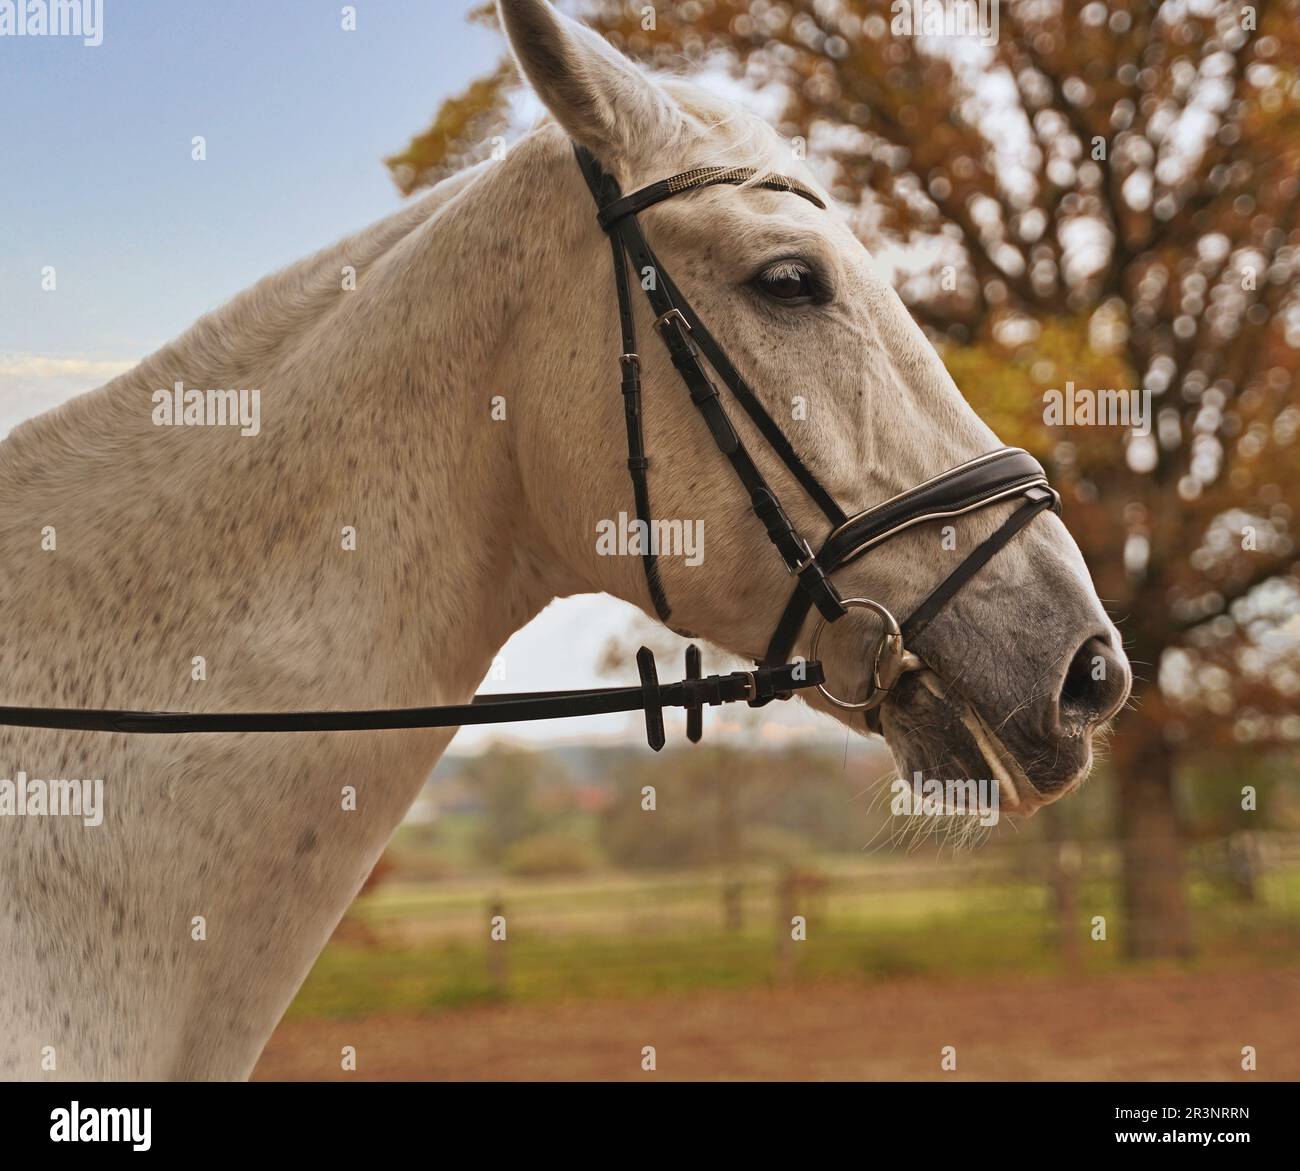 Fotografare a cavallo bianco su un maneggio Foto Stock